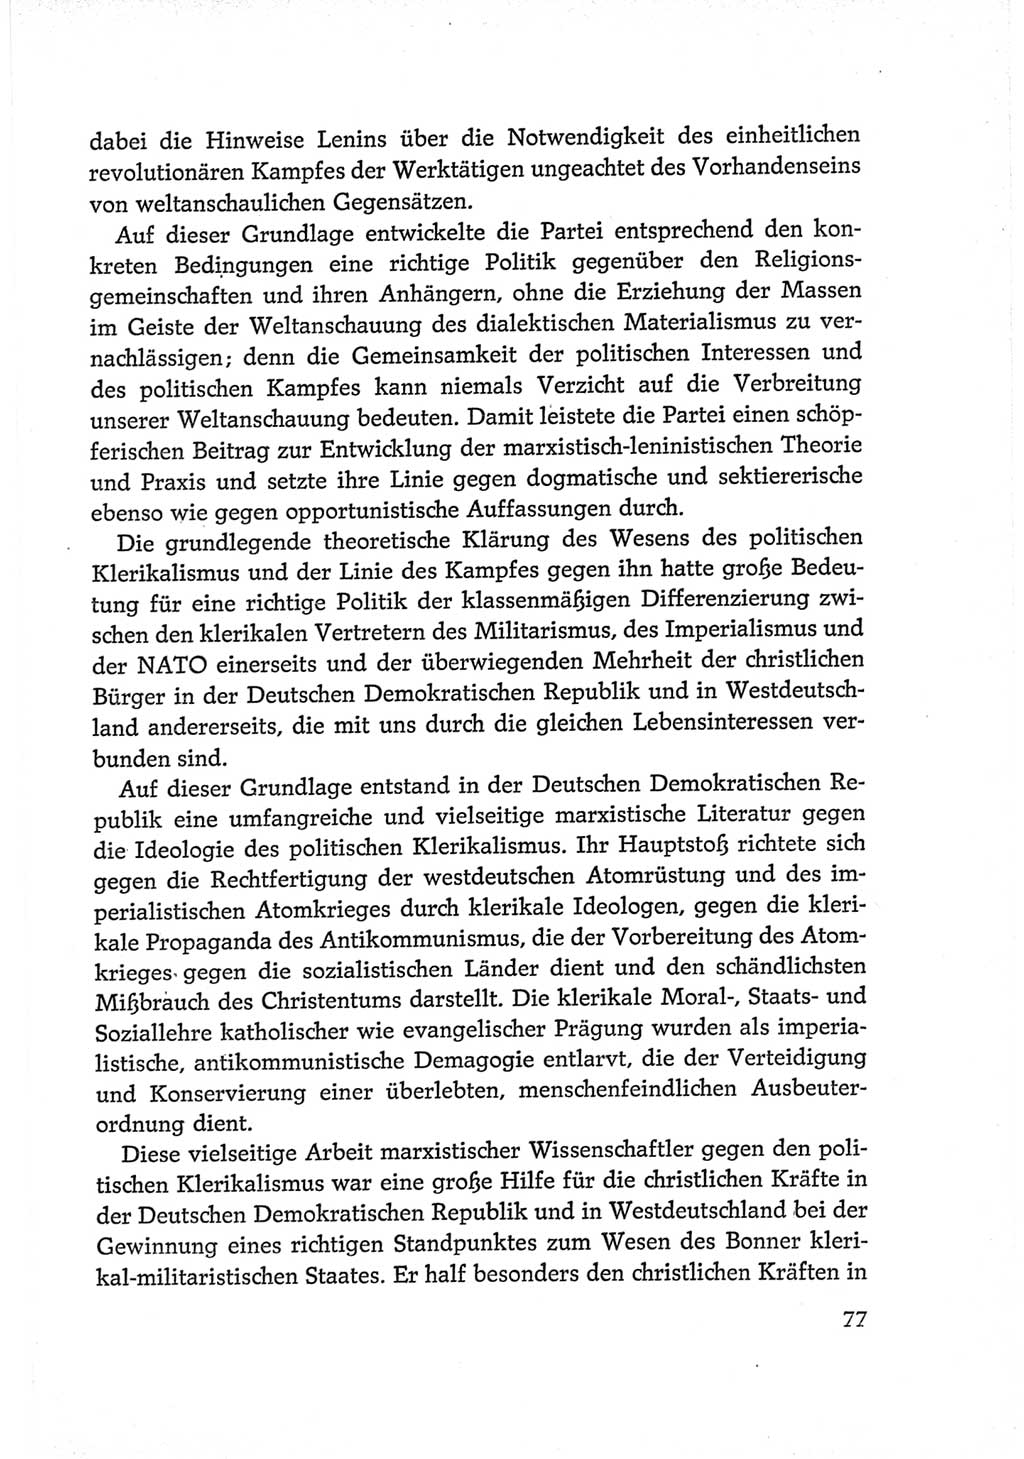 Protokoll der Verhandlungen des Ⅵ. Parteitages der Sozialistischen Einheitspartei Deutschlands (SED) [Deutsche Demokratische Republik (DDR)] 1963, Band Ⅳ, Seite 77 (Prot. Verh. Ⅵ. PT SED DDR 1963, Bd. Ⅳ, S. 77)